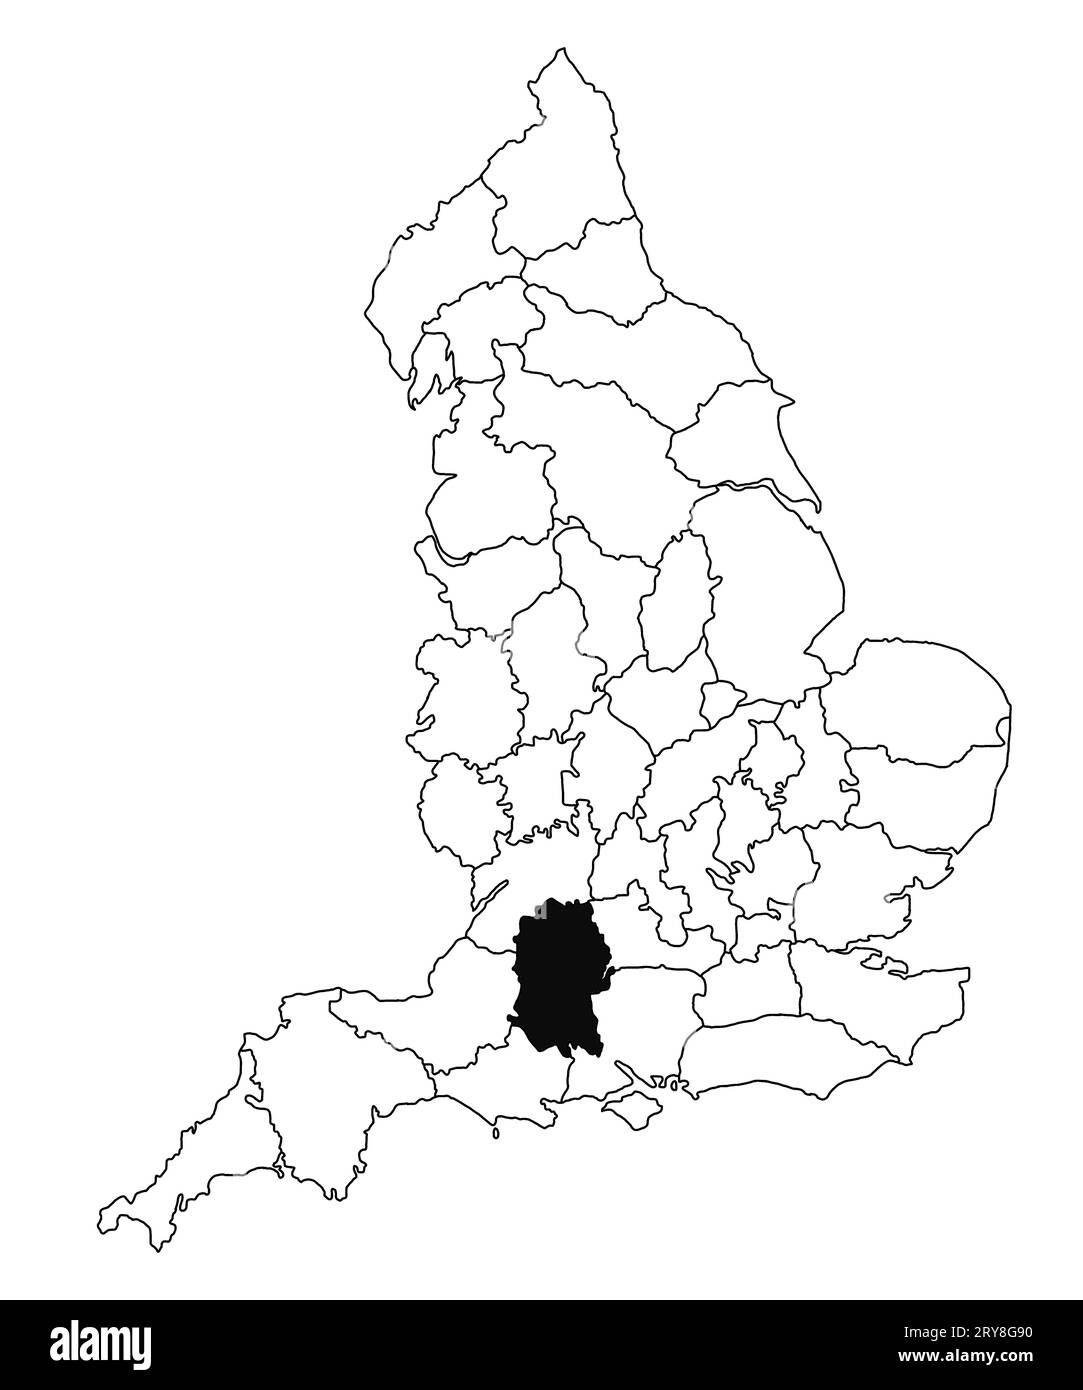 Mappa della contea di Wiltshire in Inghilterra su sfondo bianco. Mappa singola della contea evidenziata da colore nero sulla mappa amministrativa dell'Inghilterra. Regno Unito, Foto Stock